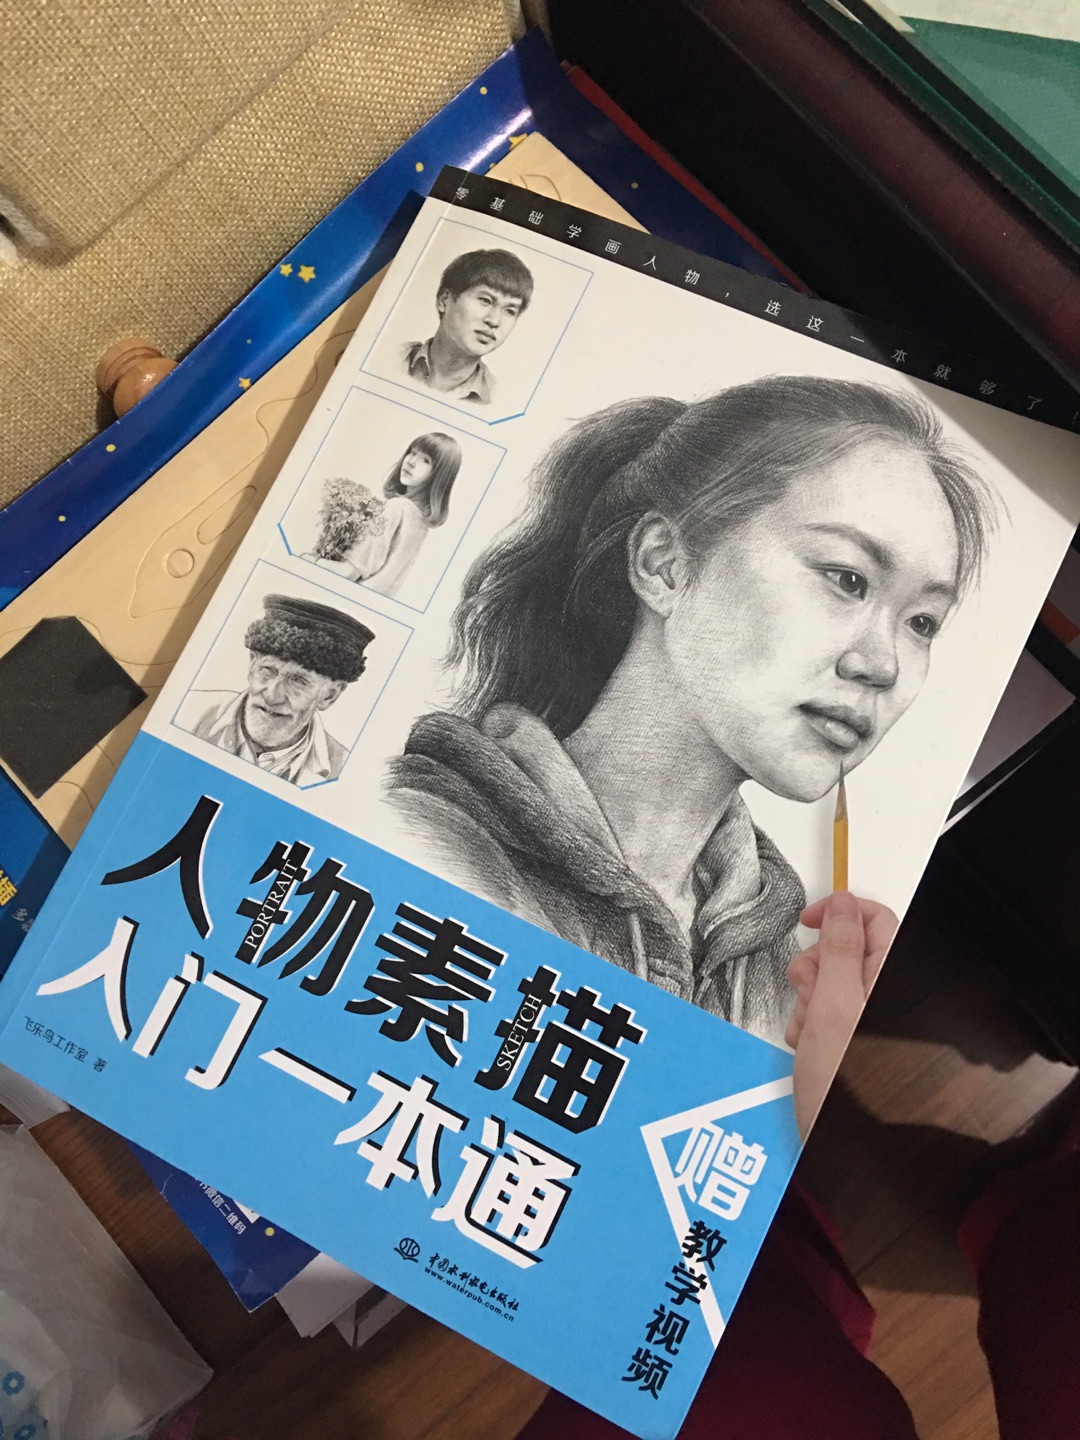 是吴晓波的粉丝，也喜欢画画，书的质量挺好的，速度也快，素描书介绍详细易懂，很适合自学。